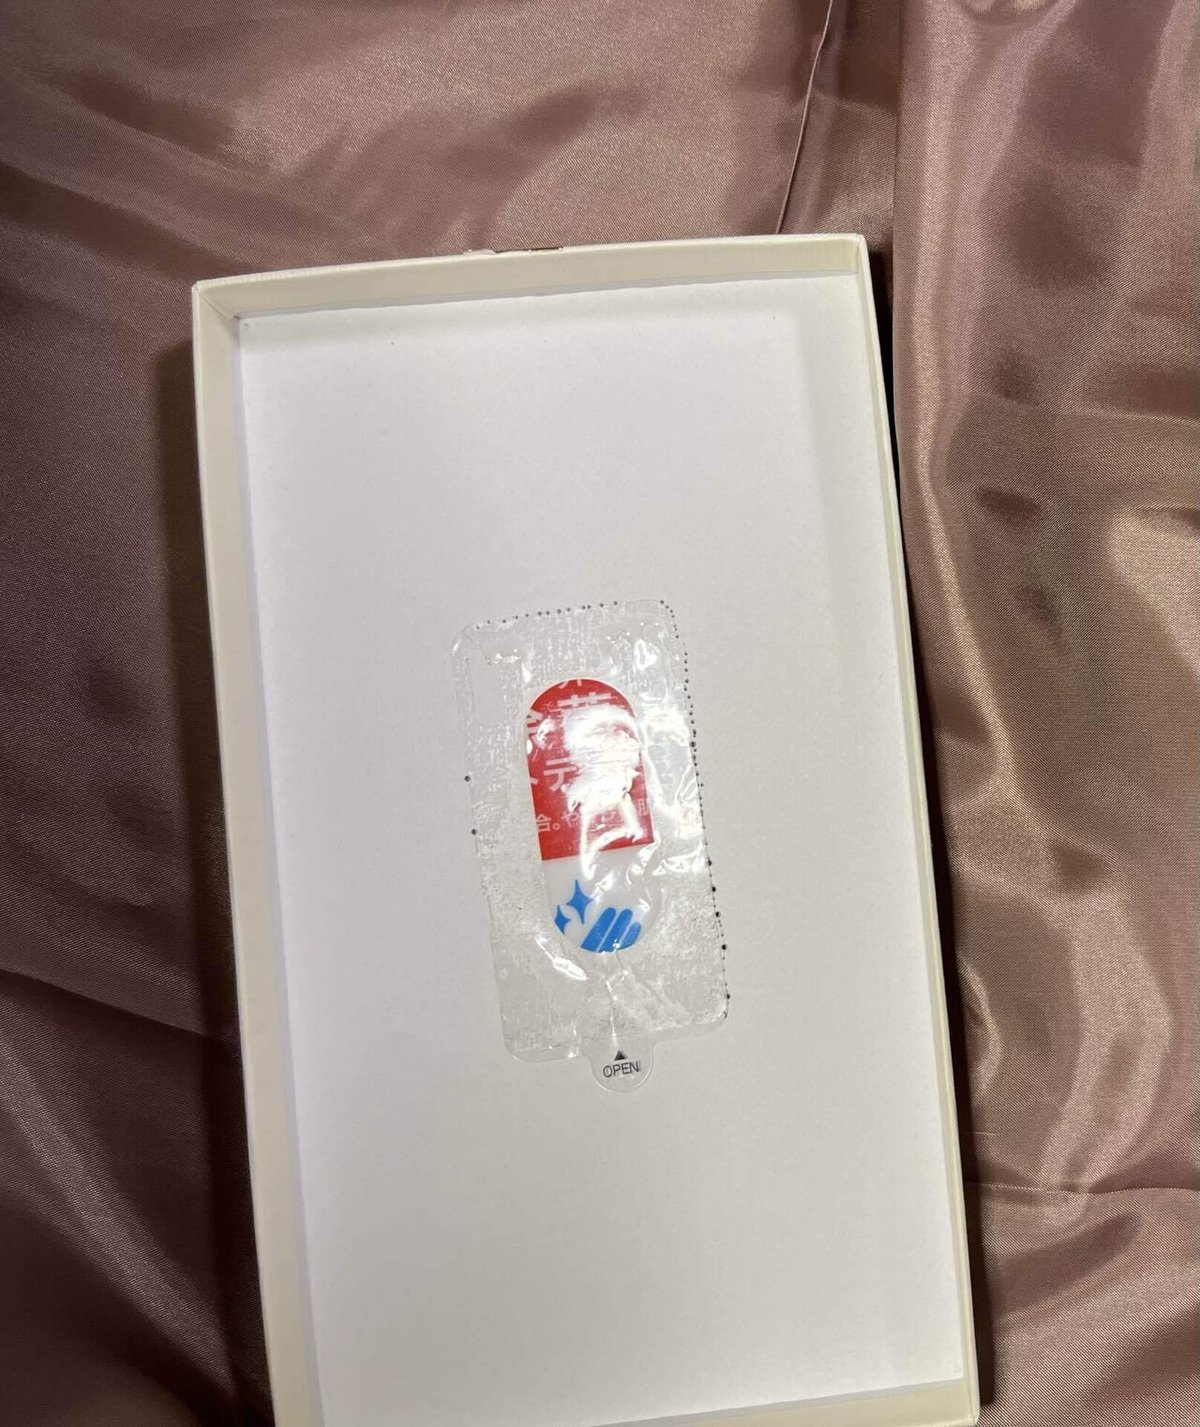 写真には、白い箱の中に透明なプラスチックの包装が入っています。包装の中には赤と青のデザインが見えます。箱は柔らかいピンク色の布の上に置かれています。包装には「OPEN」と書かれたタブが付いています。